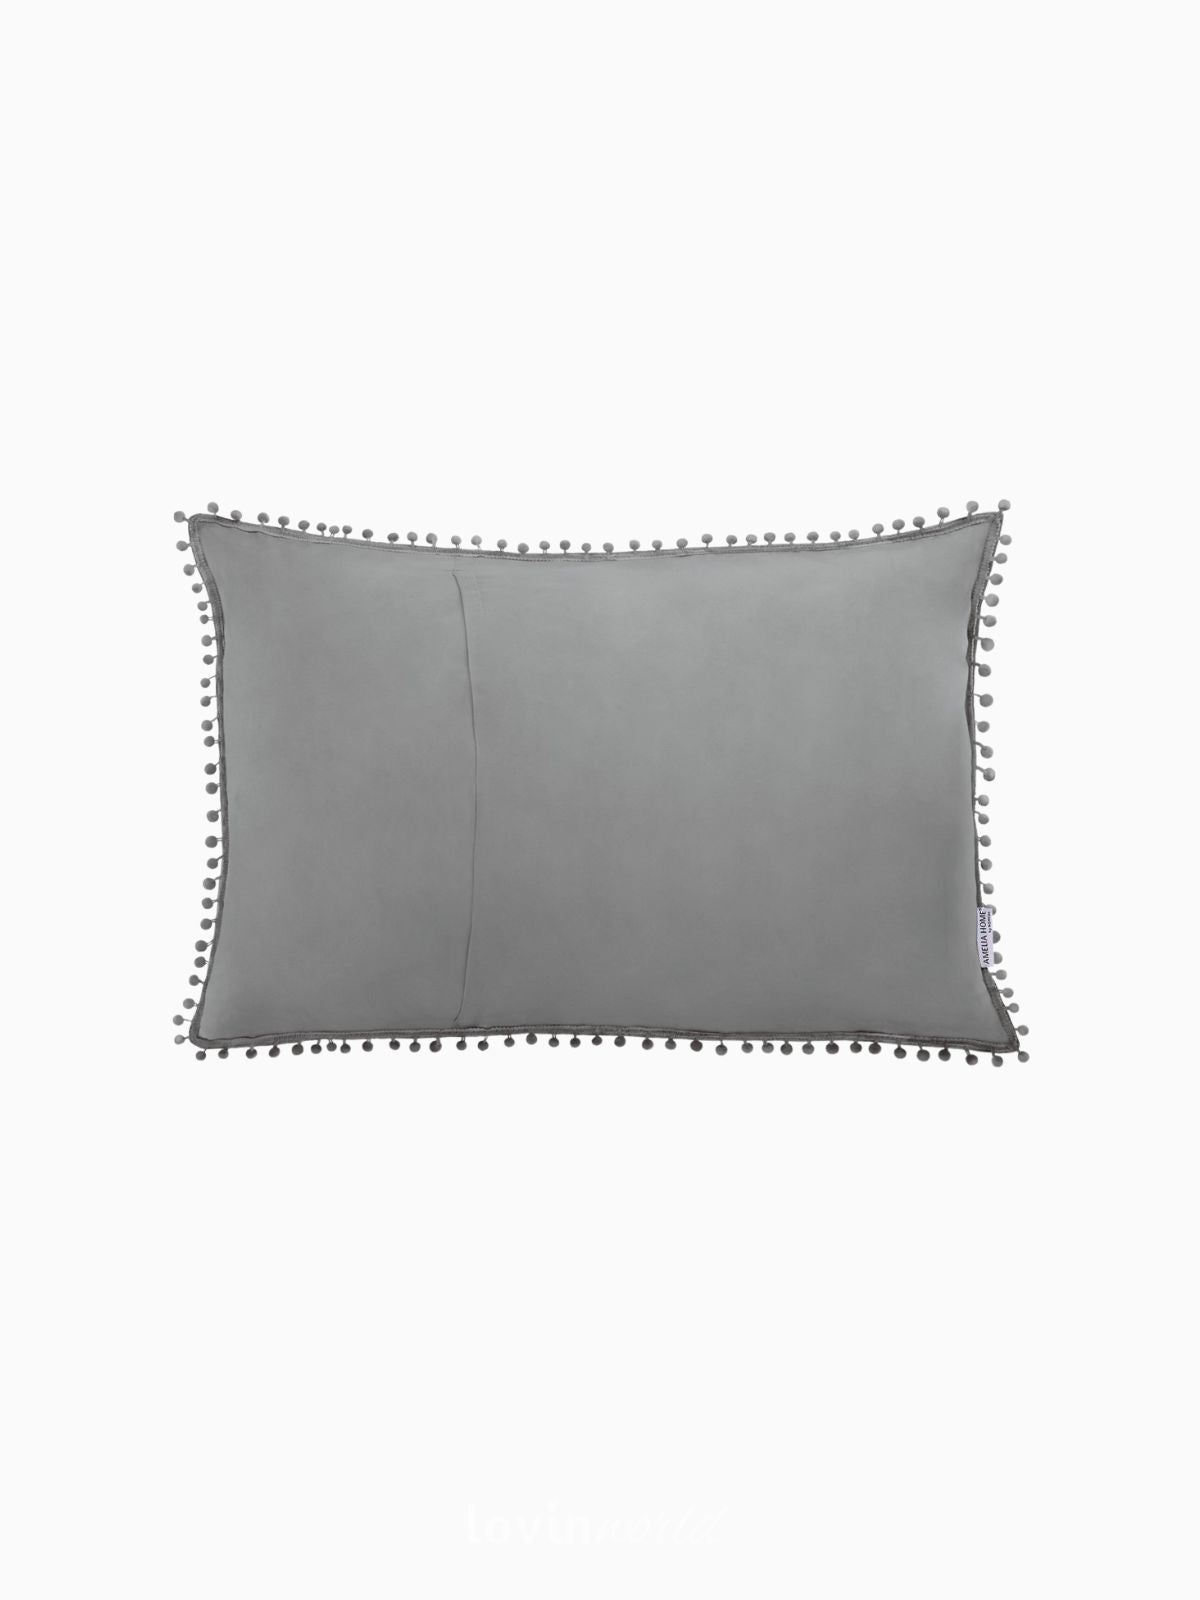 Cuscino decorativo Meadore in colore grigio 50x70 cm.-2